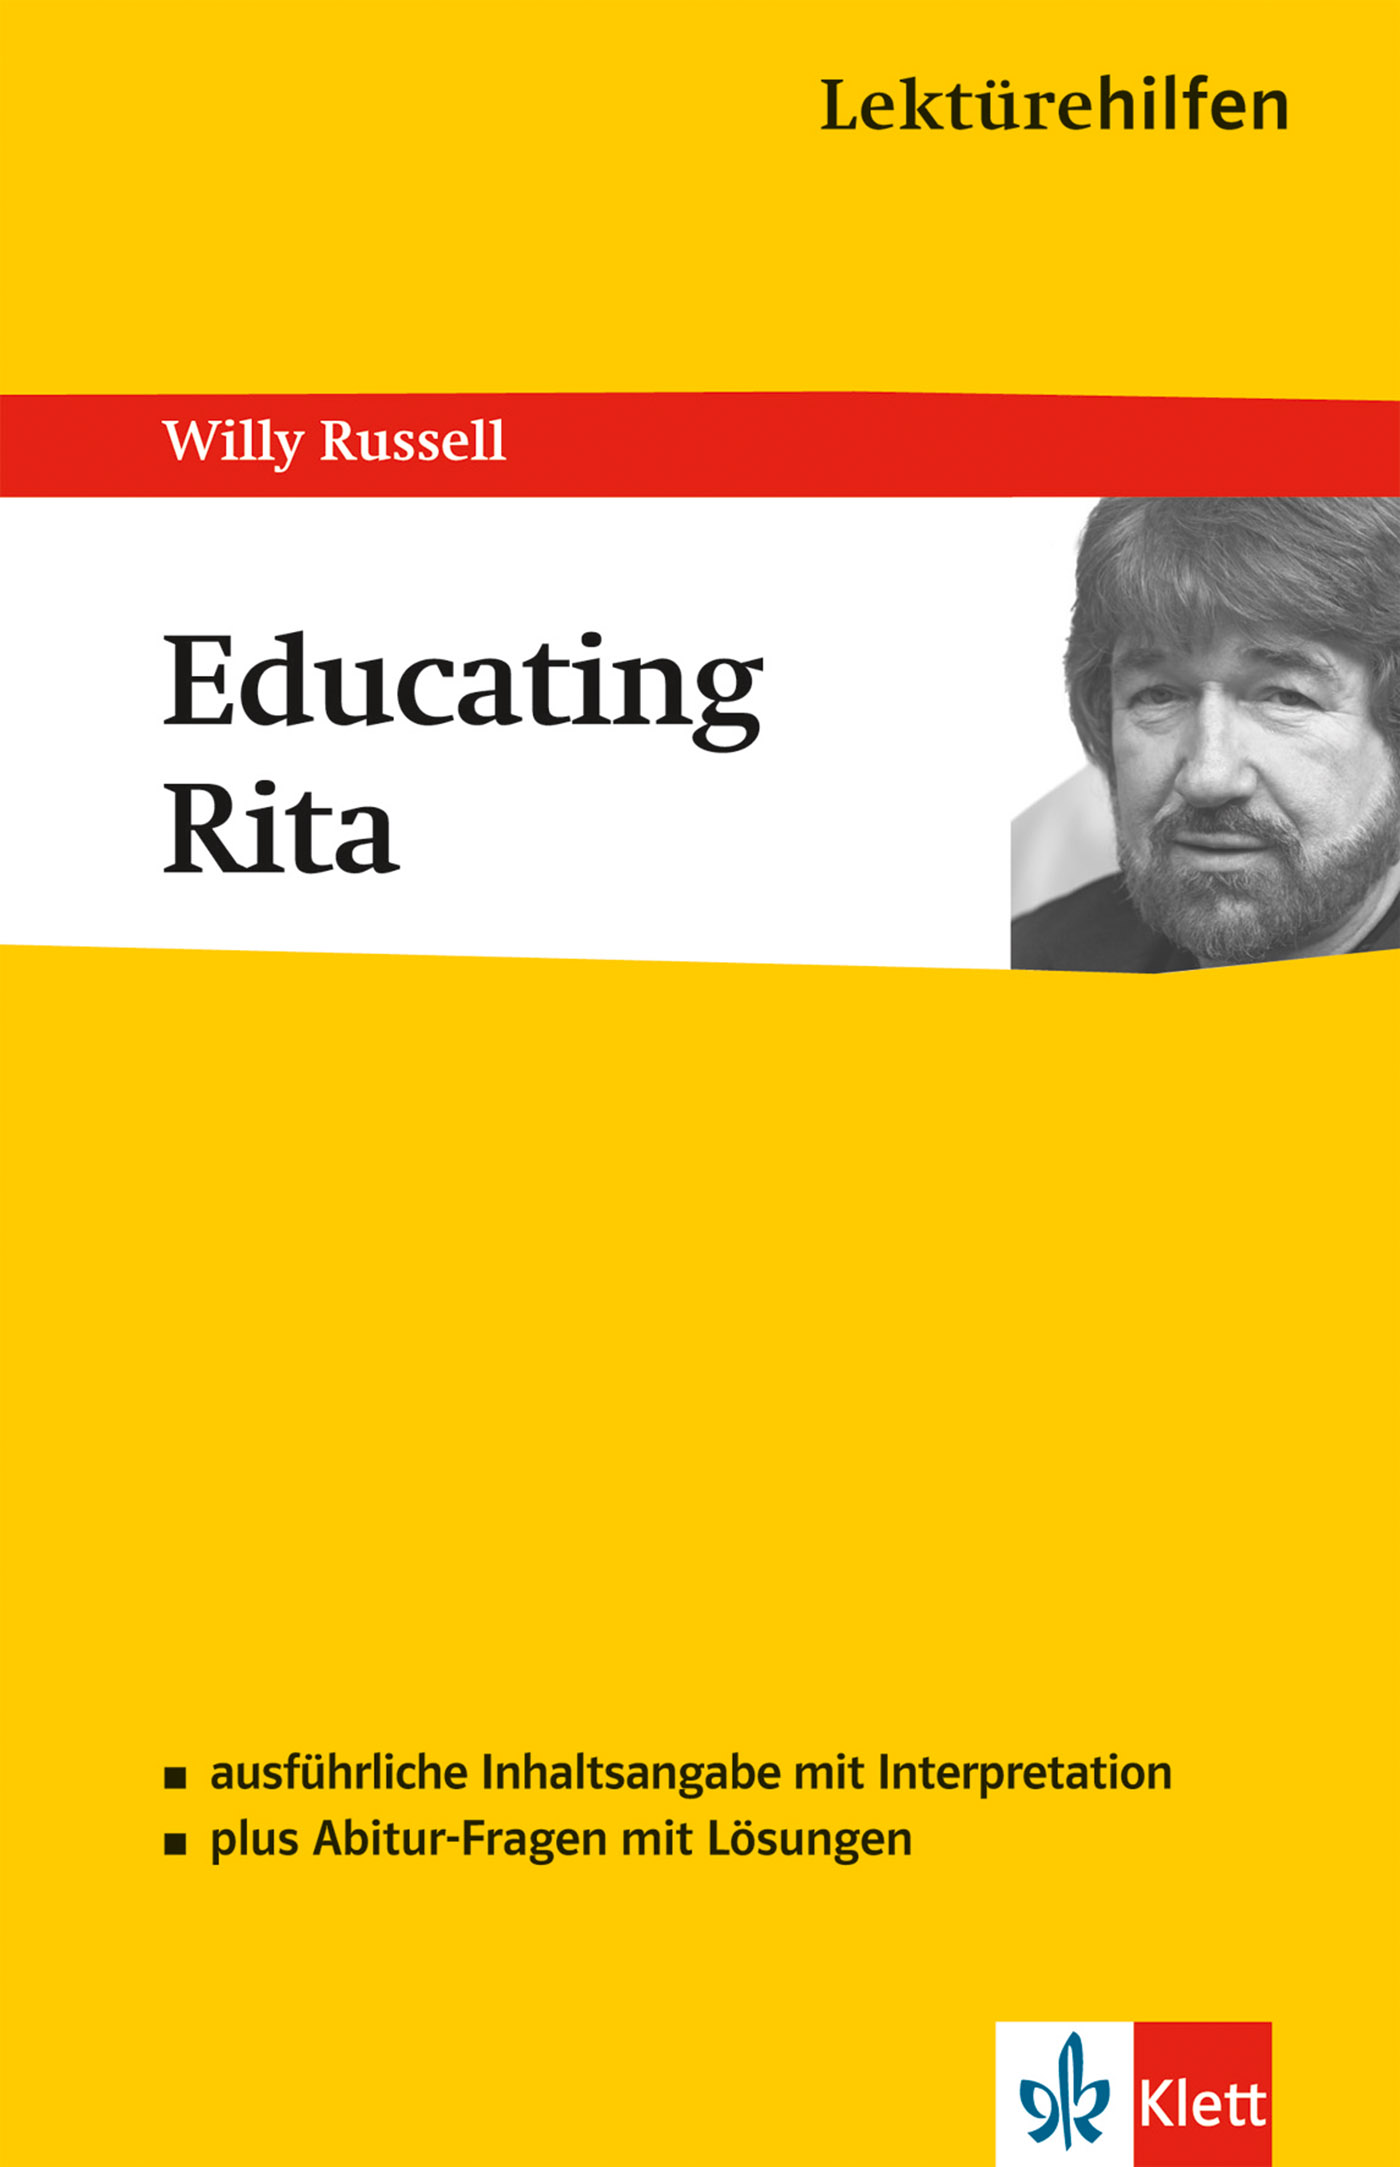 Klett Lektürehilfen Willy Russell, Educating Rita